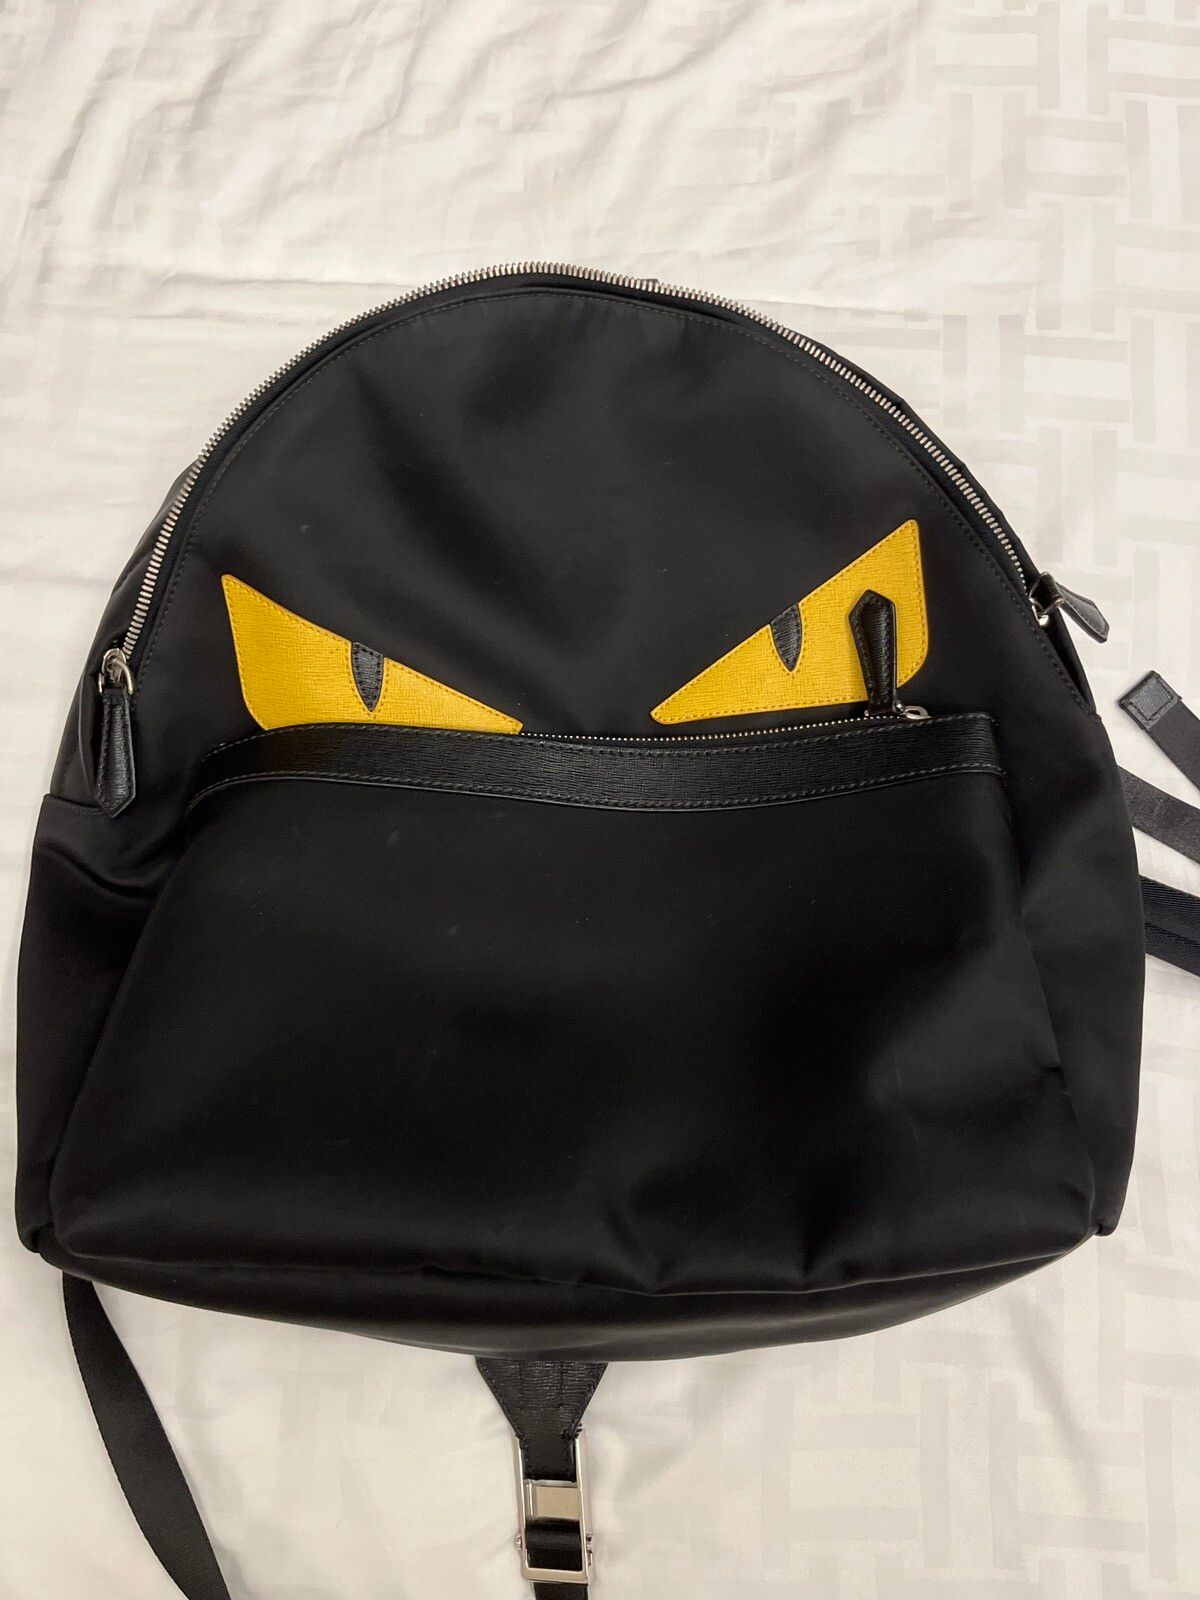 Fendi Fendi eye backpack | Grailed